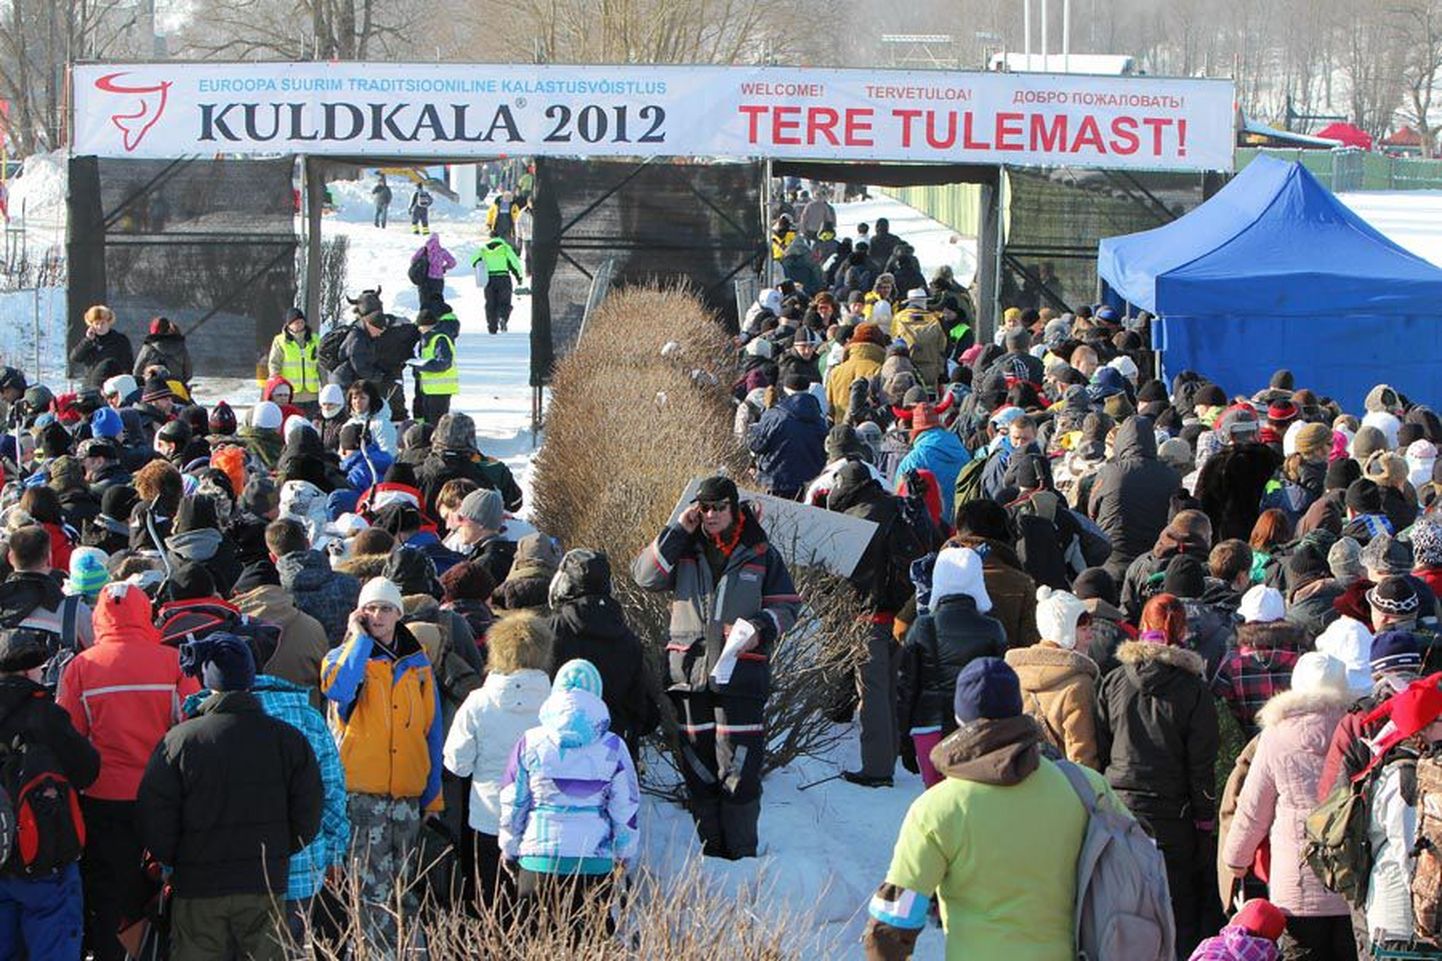 «Kuldkala» korraldajad on linnaga rahul ning kalapidu jääb Viljandisse.